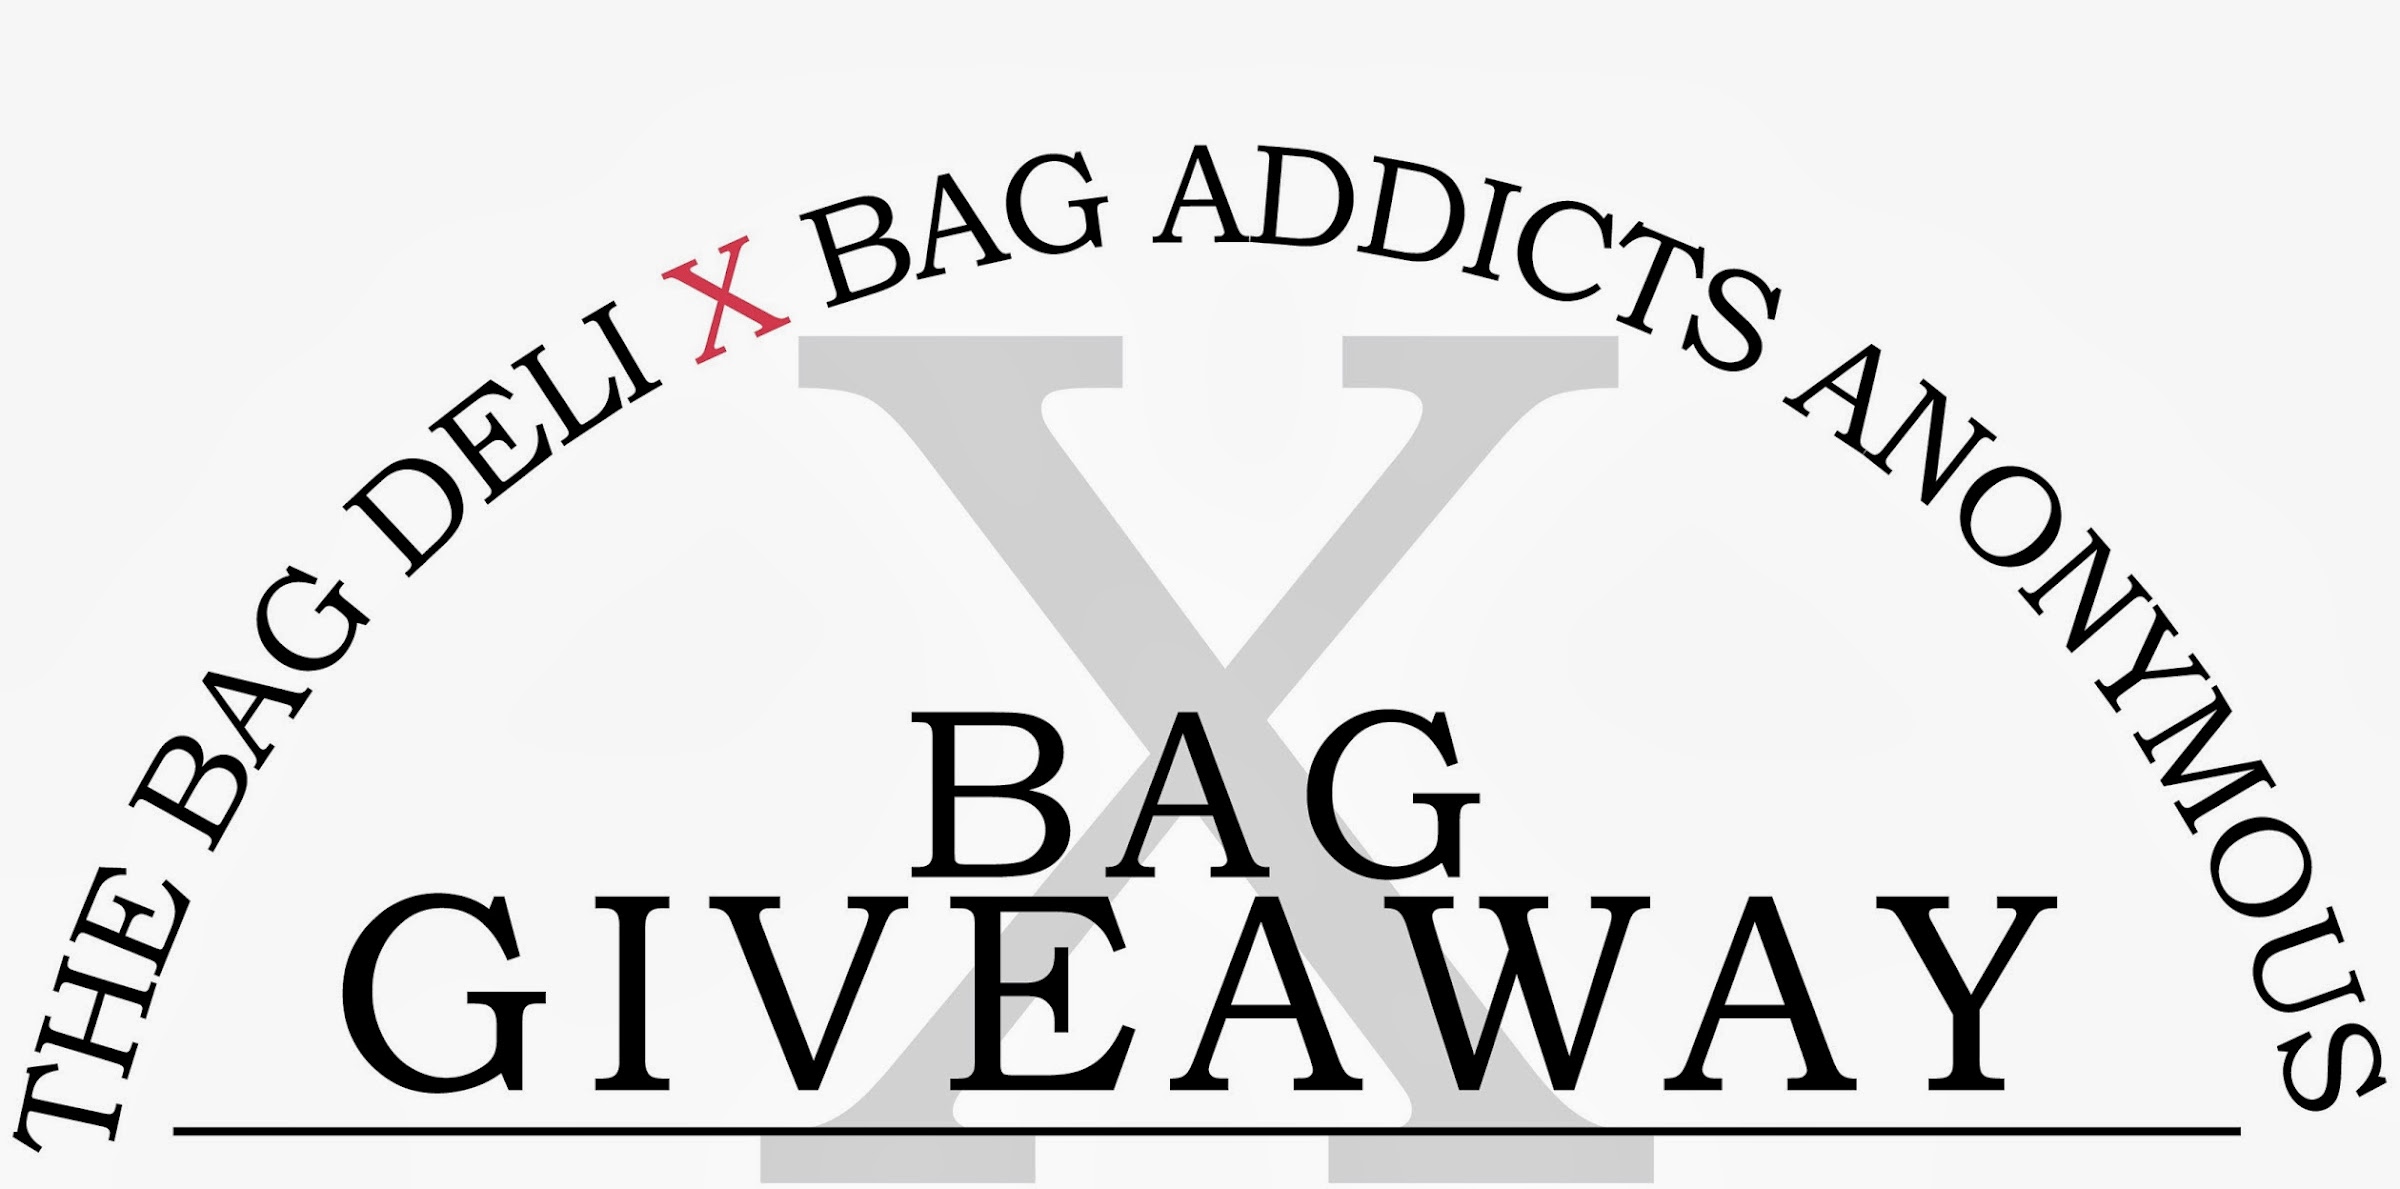 Newsflash: Bag Addicts Anonymous x The Bag Deli Bag Giveaway!